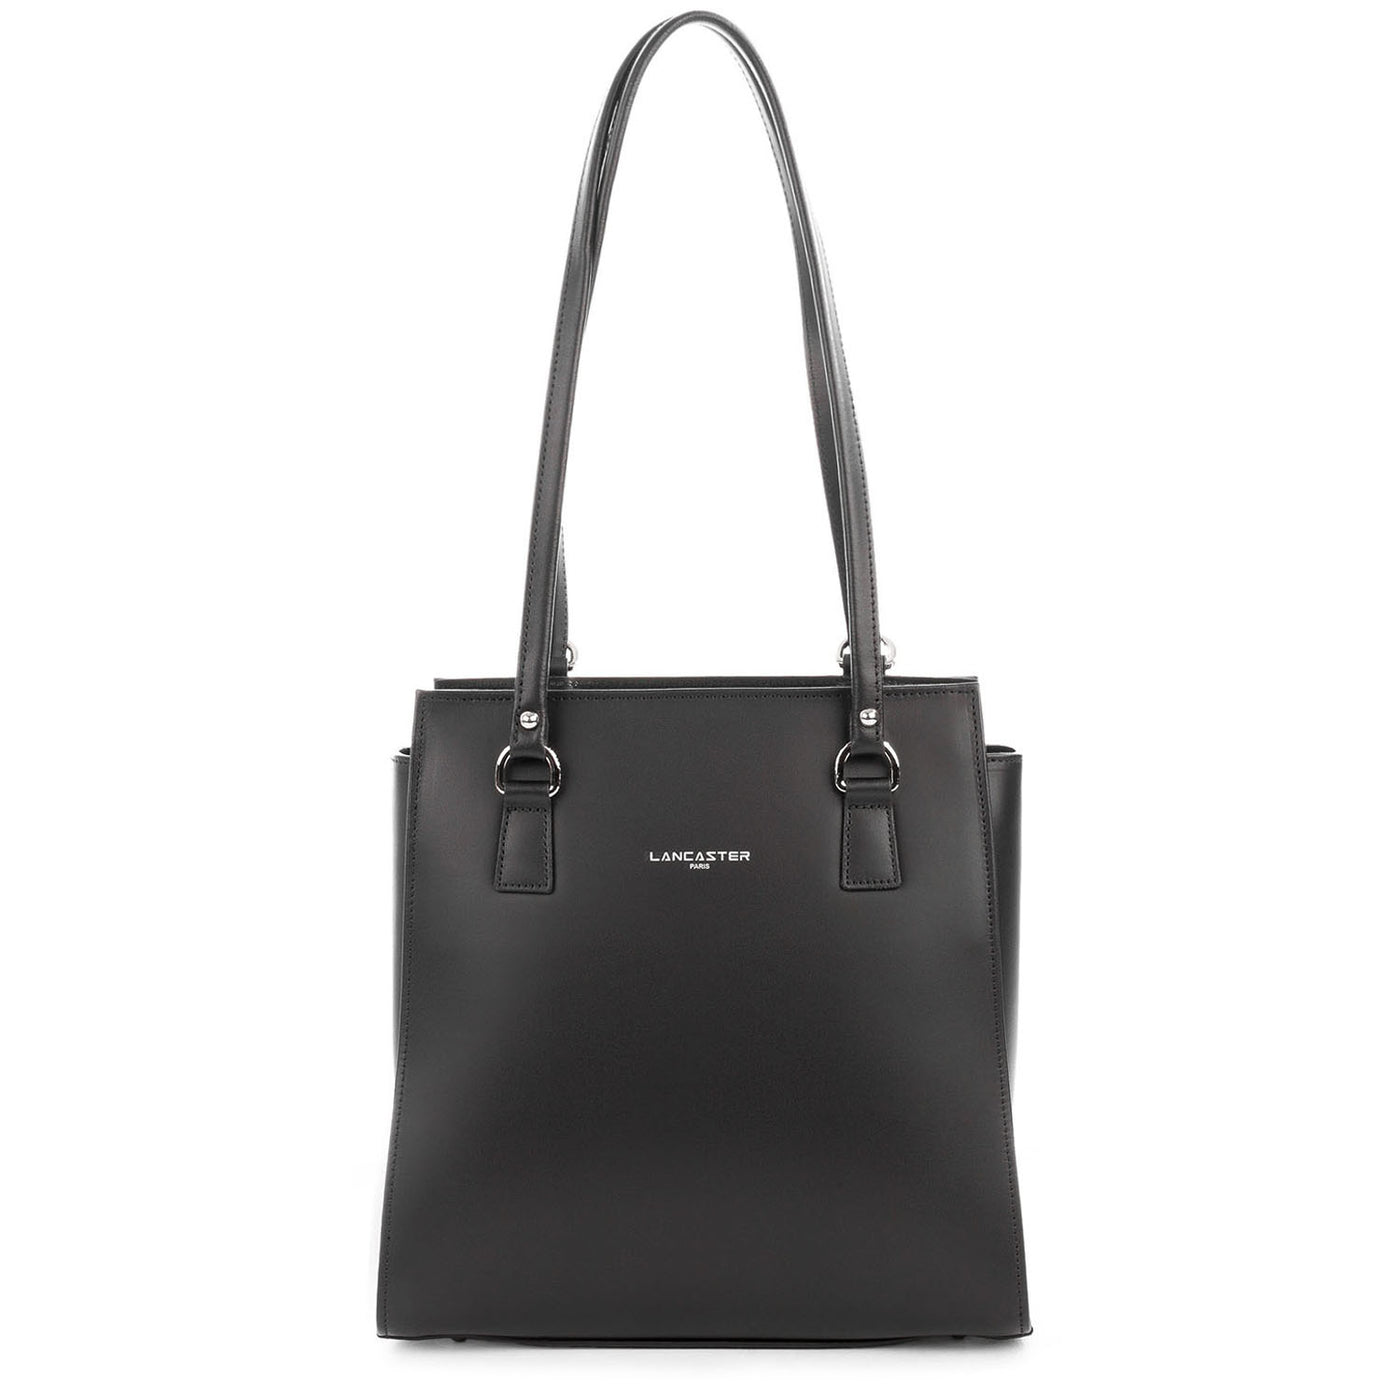 sac à dos multi-fonction - smooth #couleur_noir